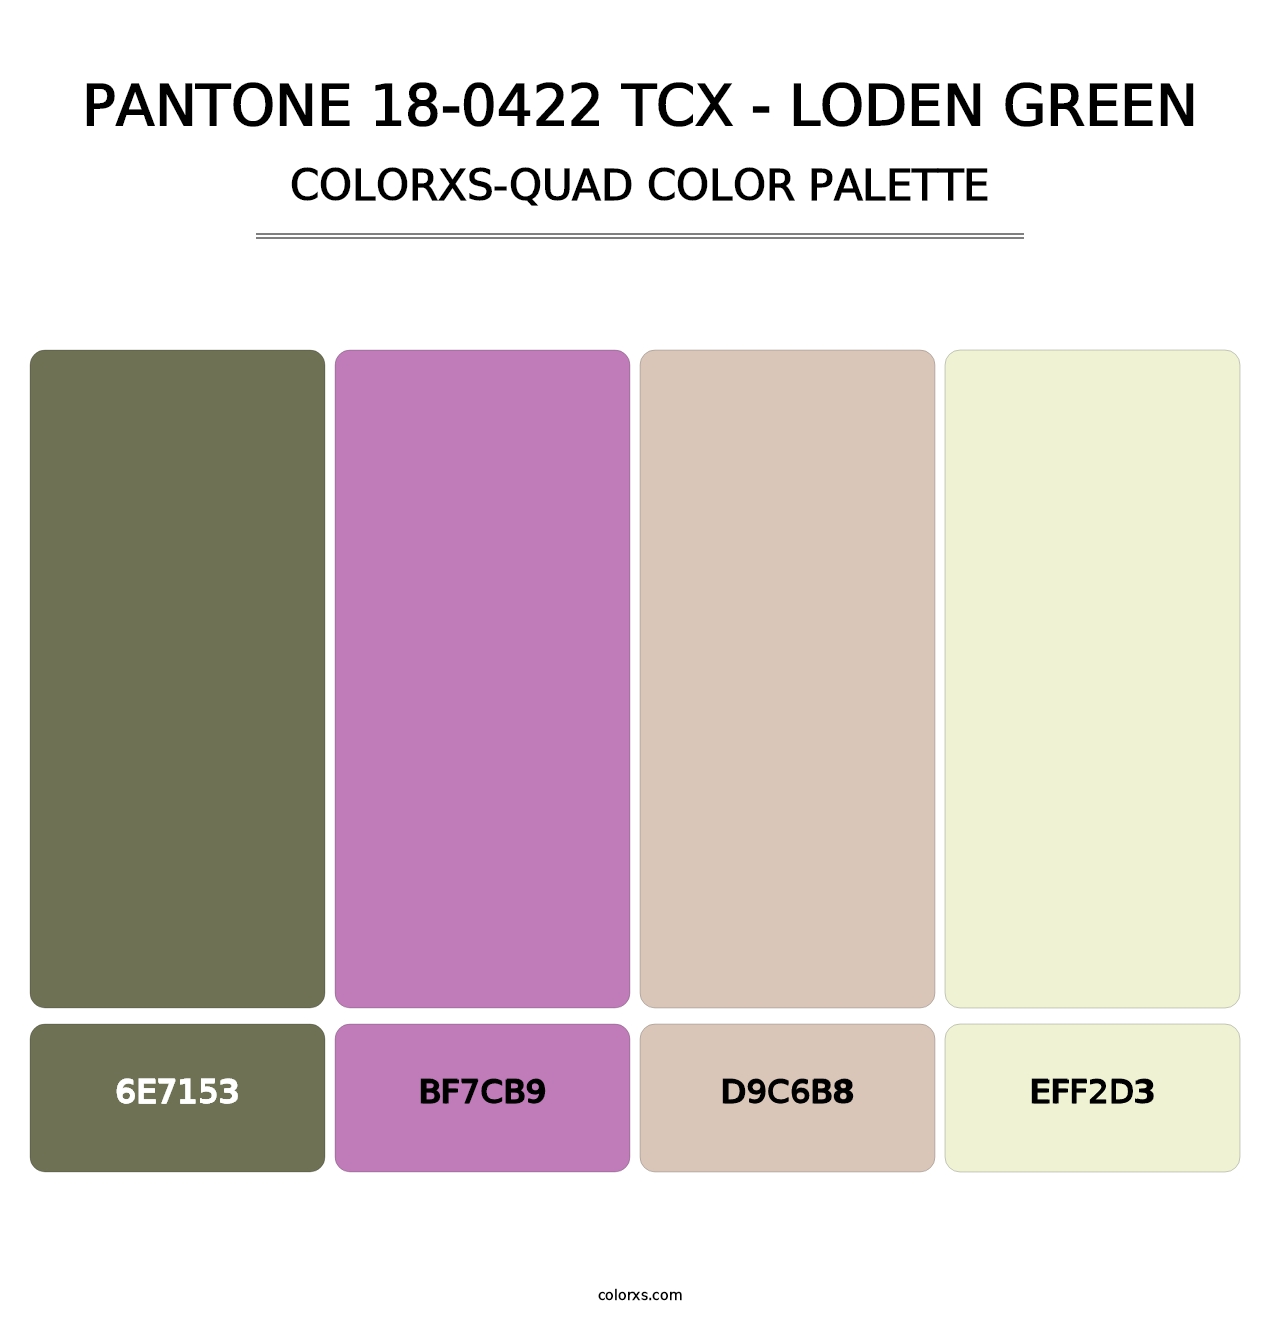 PANTONE 18-0422 TCX - Loden Green - Colorxs Quad Palette